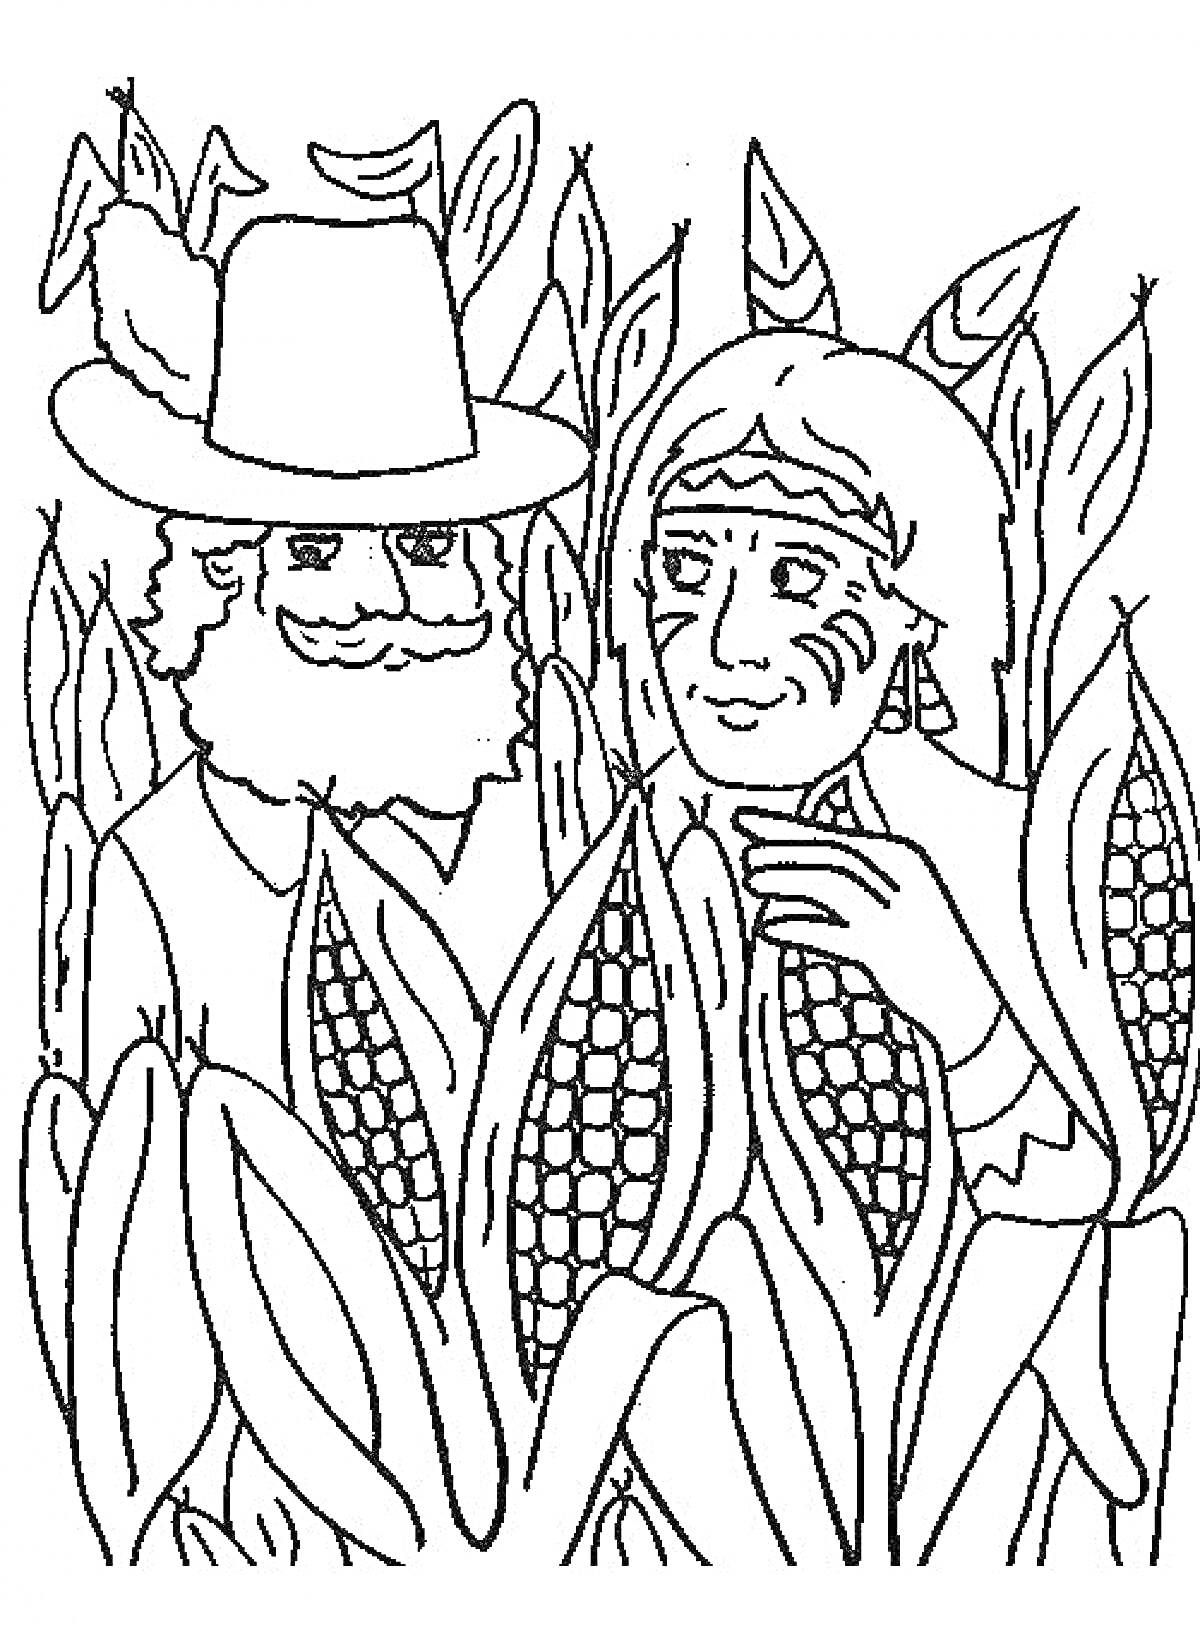 Люди среди кукурузы (человек в шляпе и человек с полосами на лице среди кукурузных стеблей)